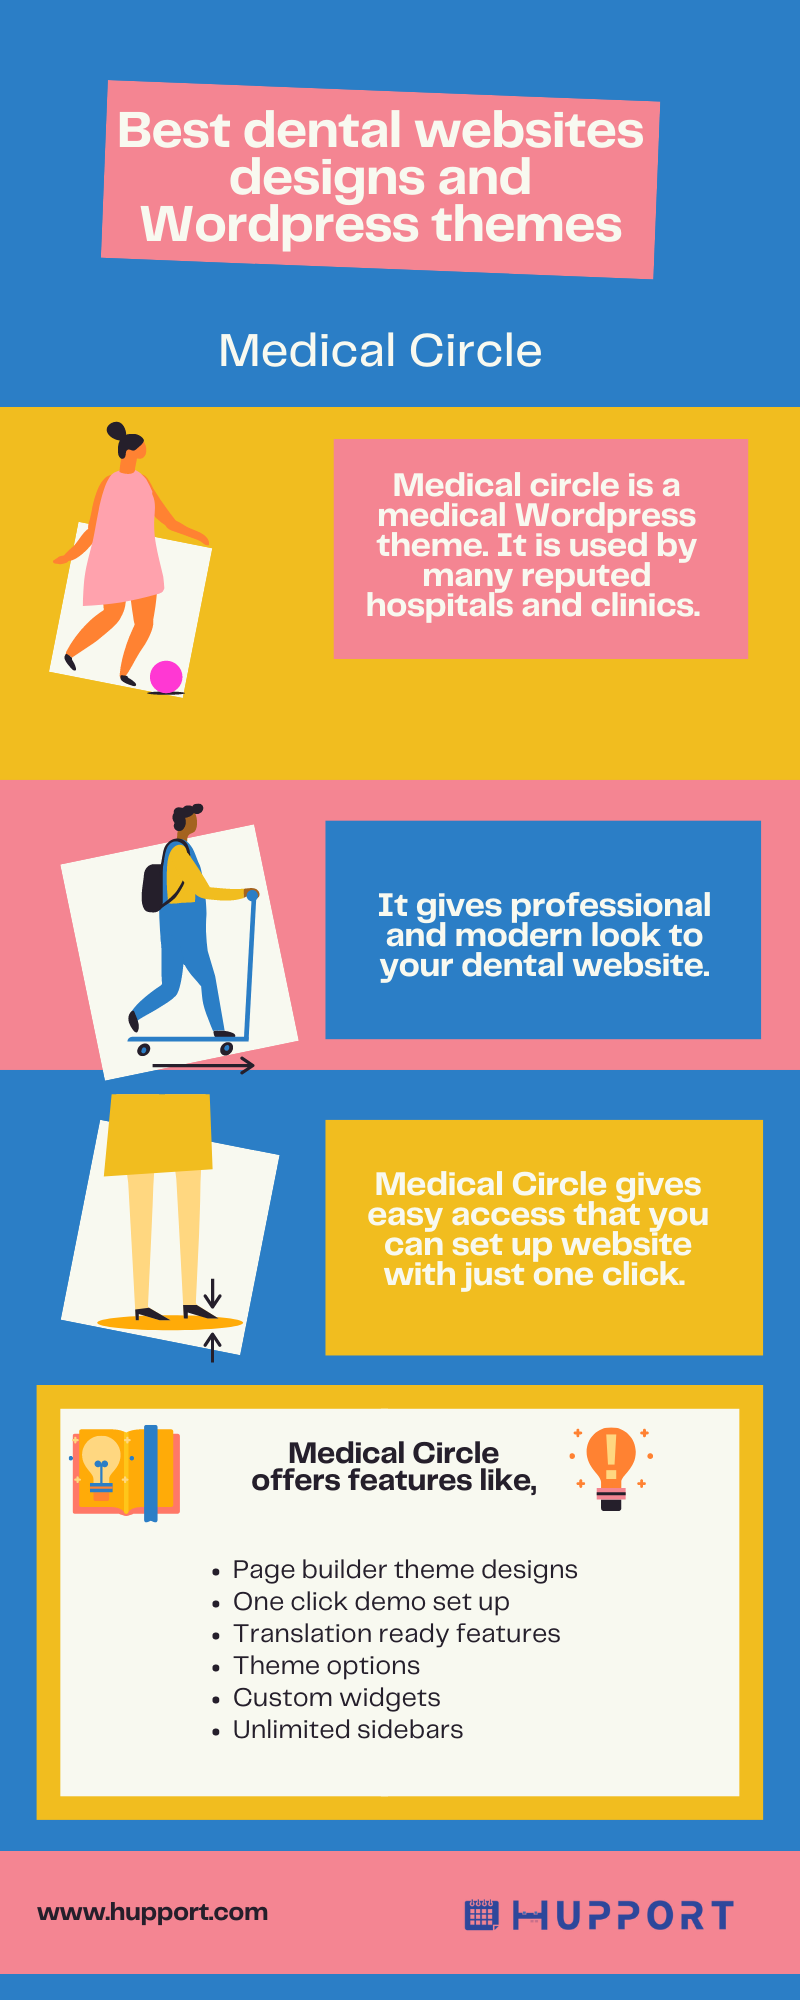 Best dental websites designs : Medical Circle